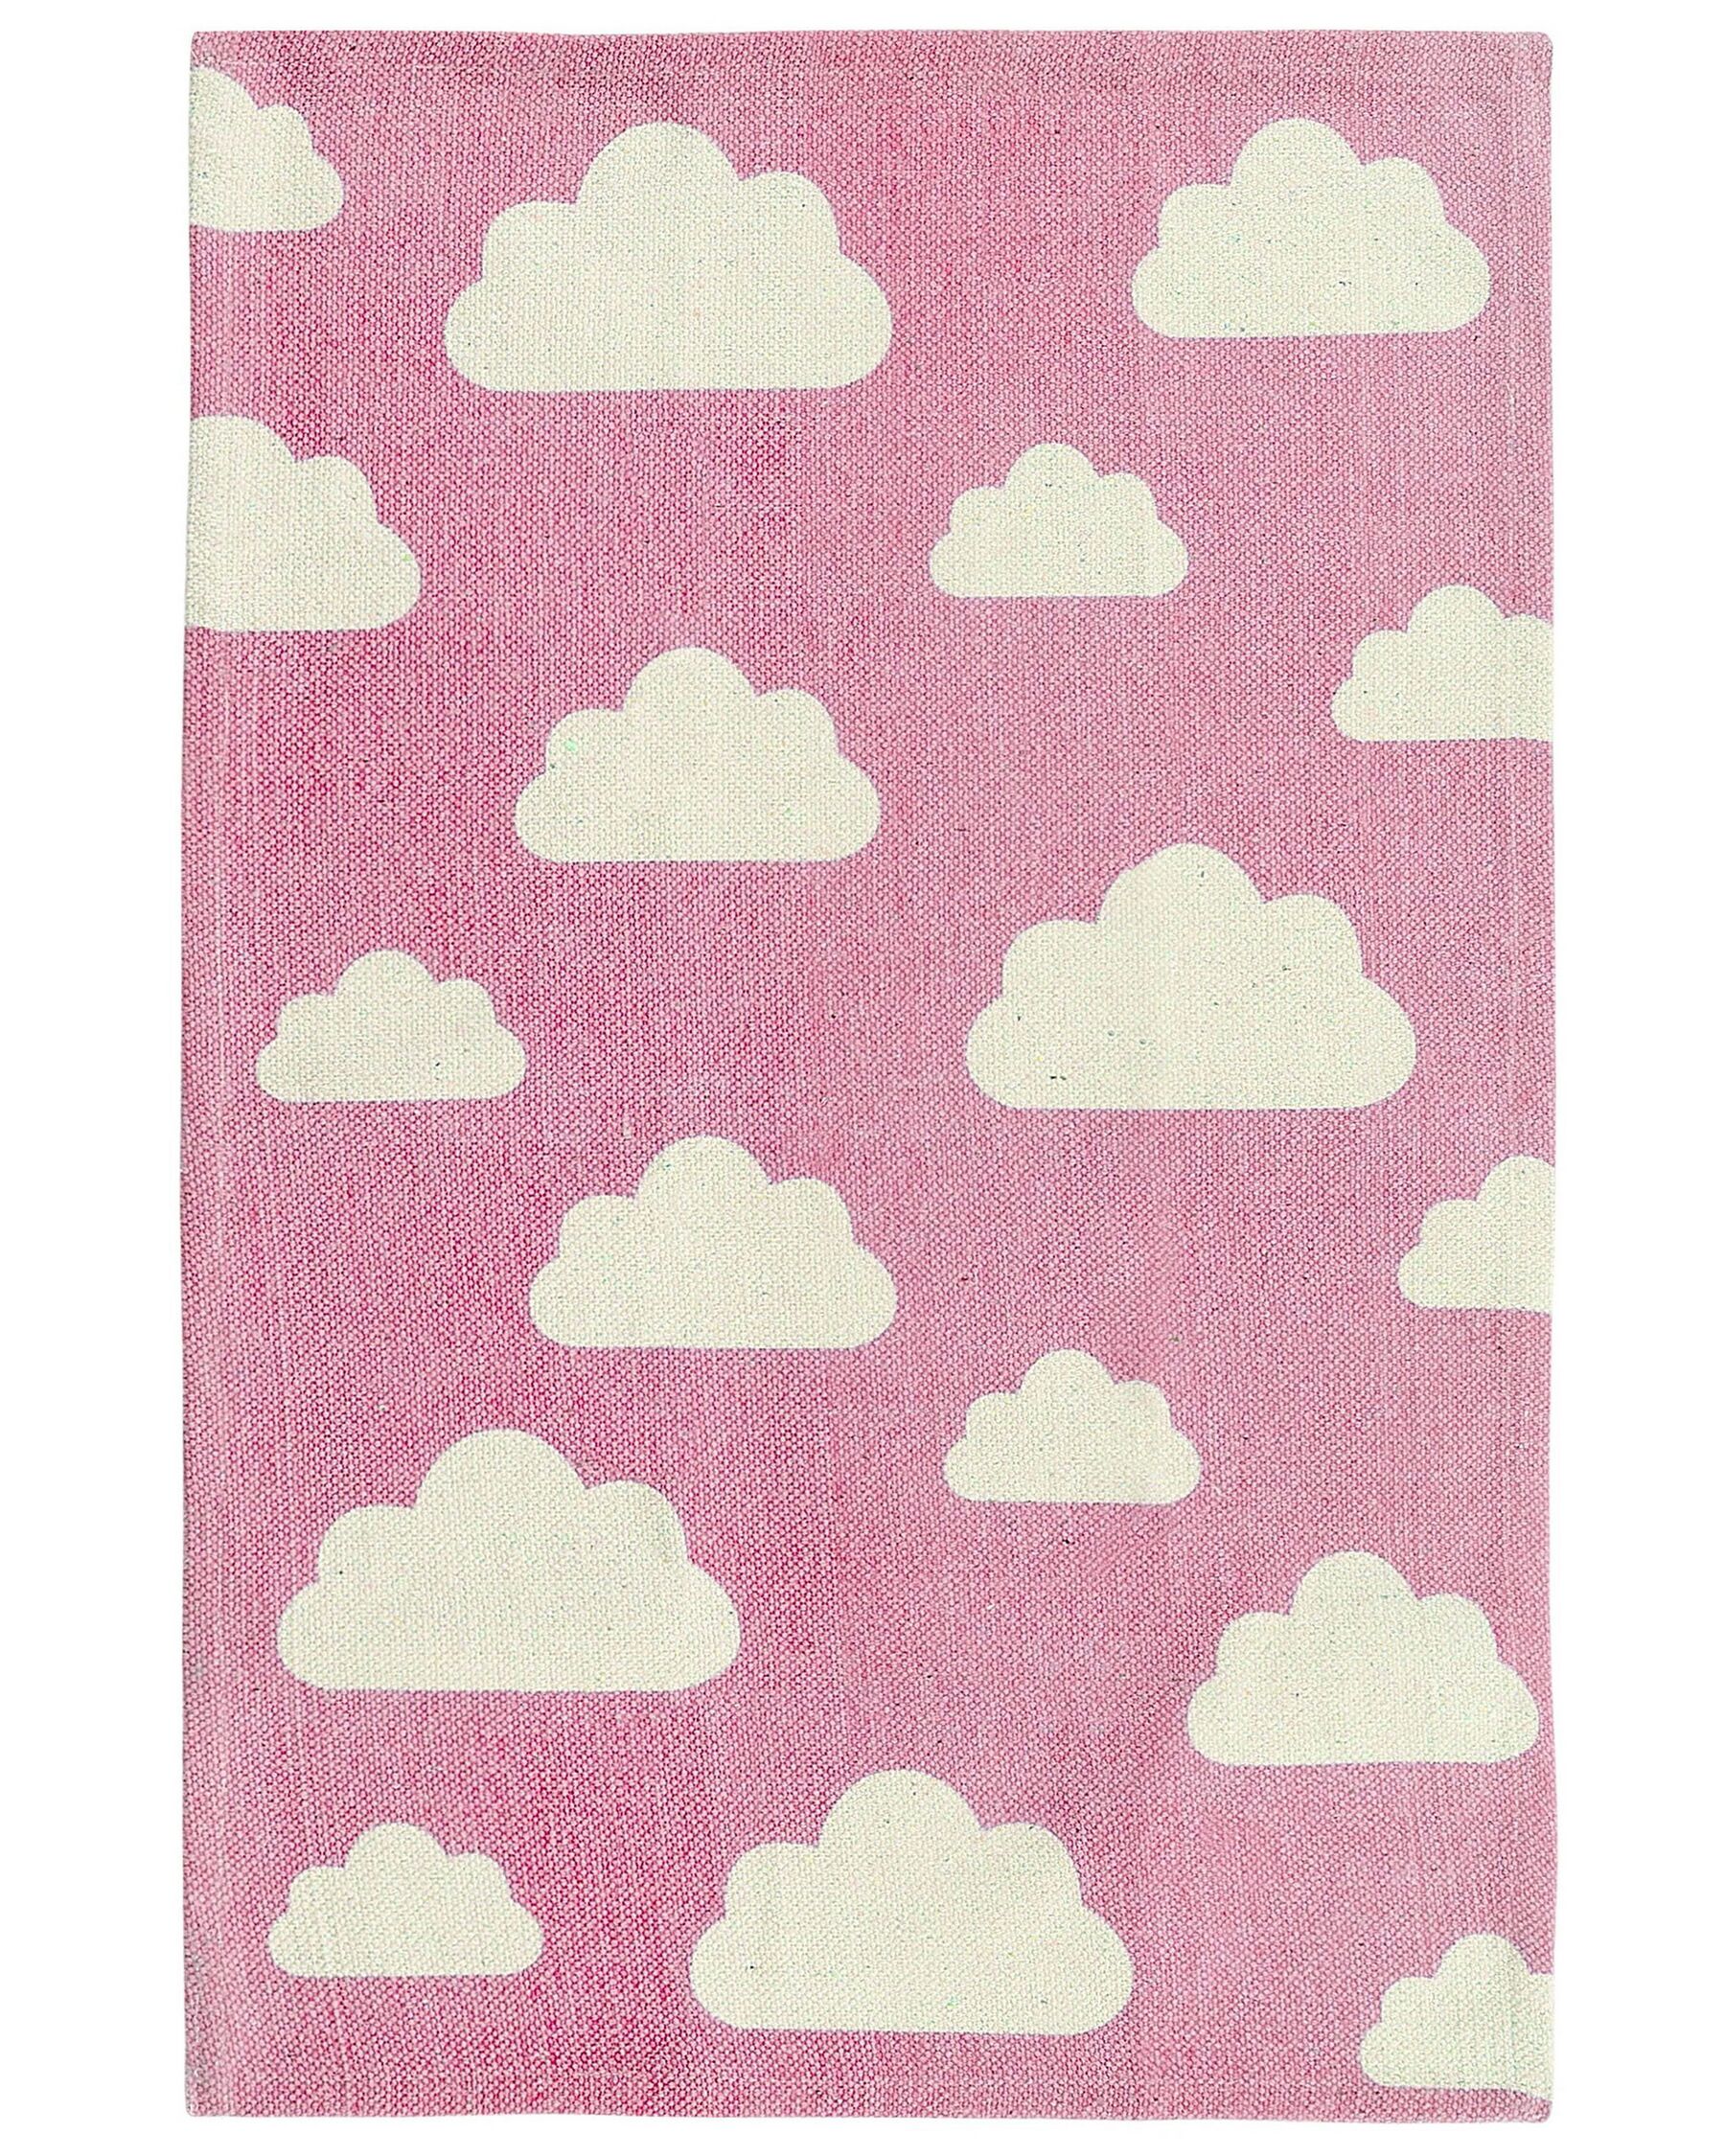 Tapete para crianças em algodão rosa e branco 60 x 90 cm GWALIJAR_790764